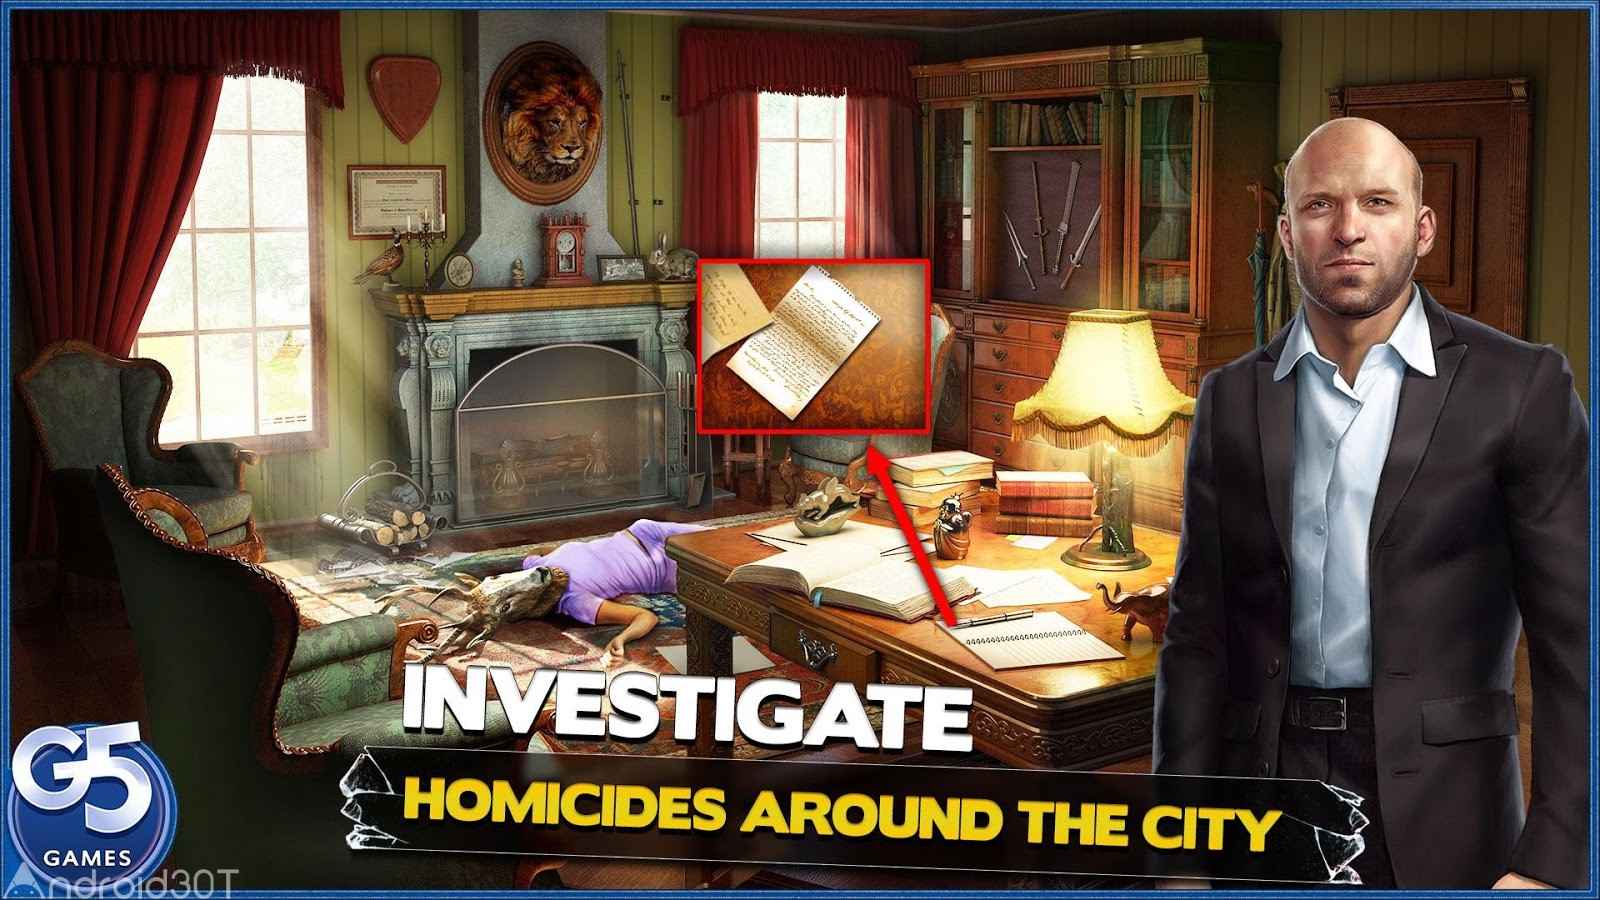 دانلود Homicide Squad: Hidden Crimes 2.35.6400 – بازی جنایت مخفی اندروید